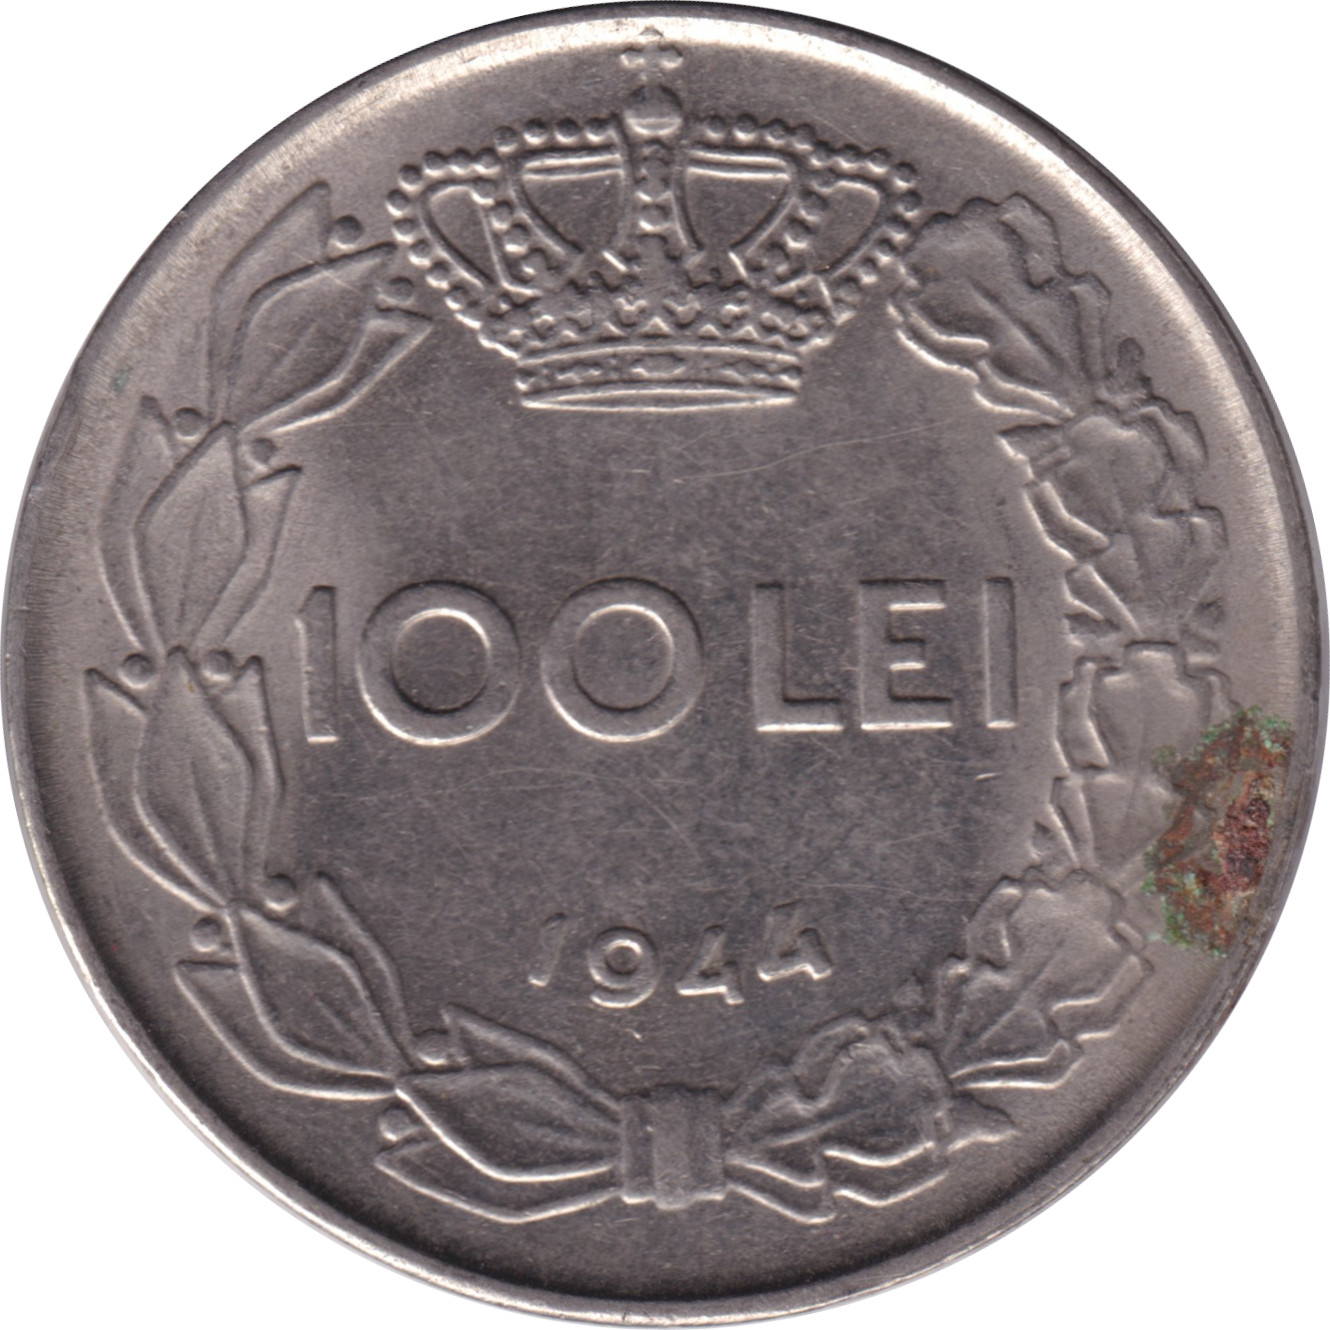 100 lei - Mihai I